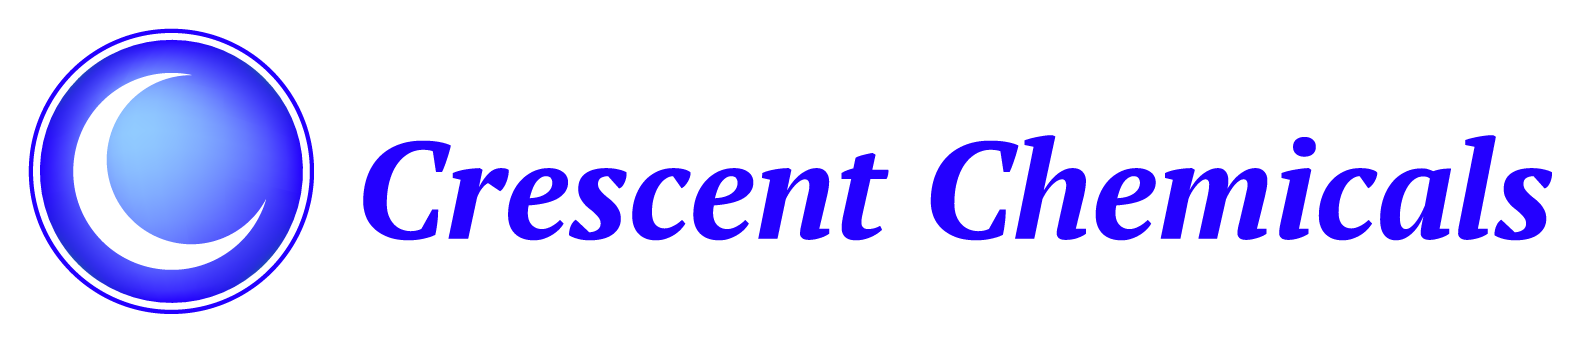 Crescent Chemicals